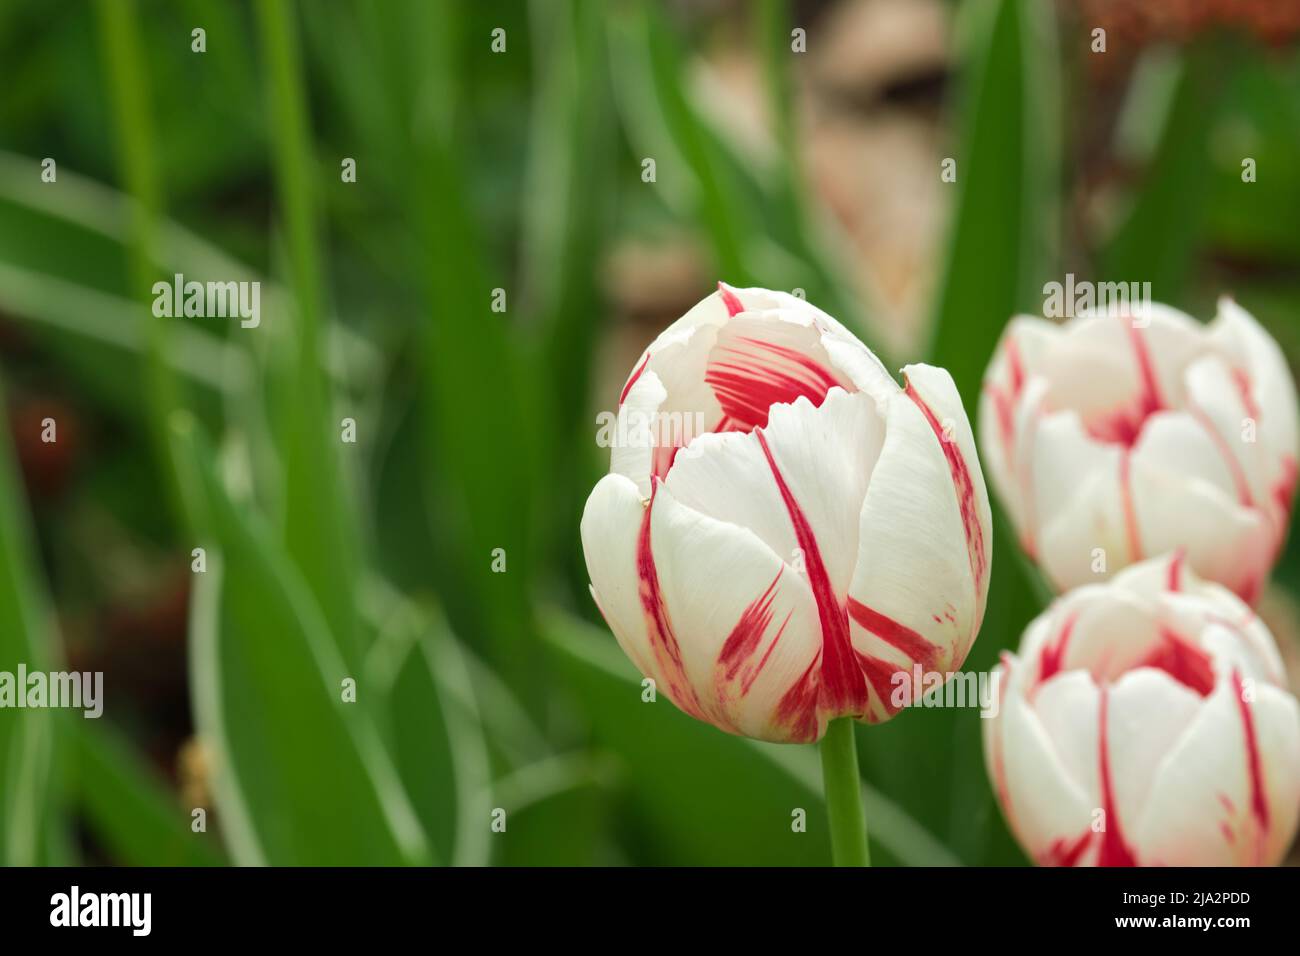 Vista ravvicinata dei fiori di tulipano del Canada 150 con la loro colorazione rossa e bianca davanti ad uno sfondo verde. Foto Stock